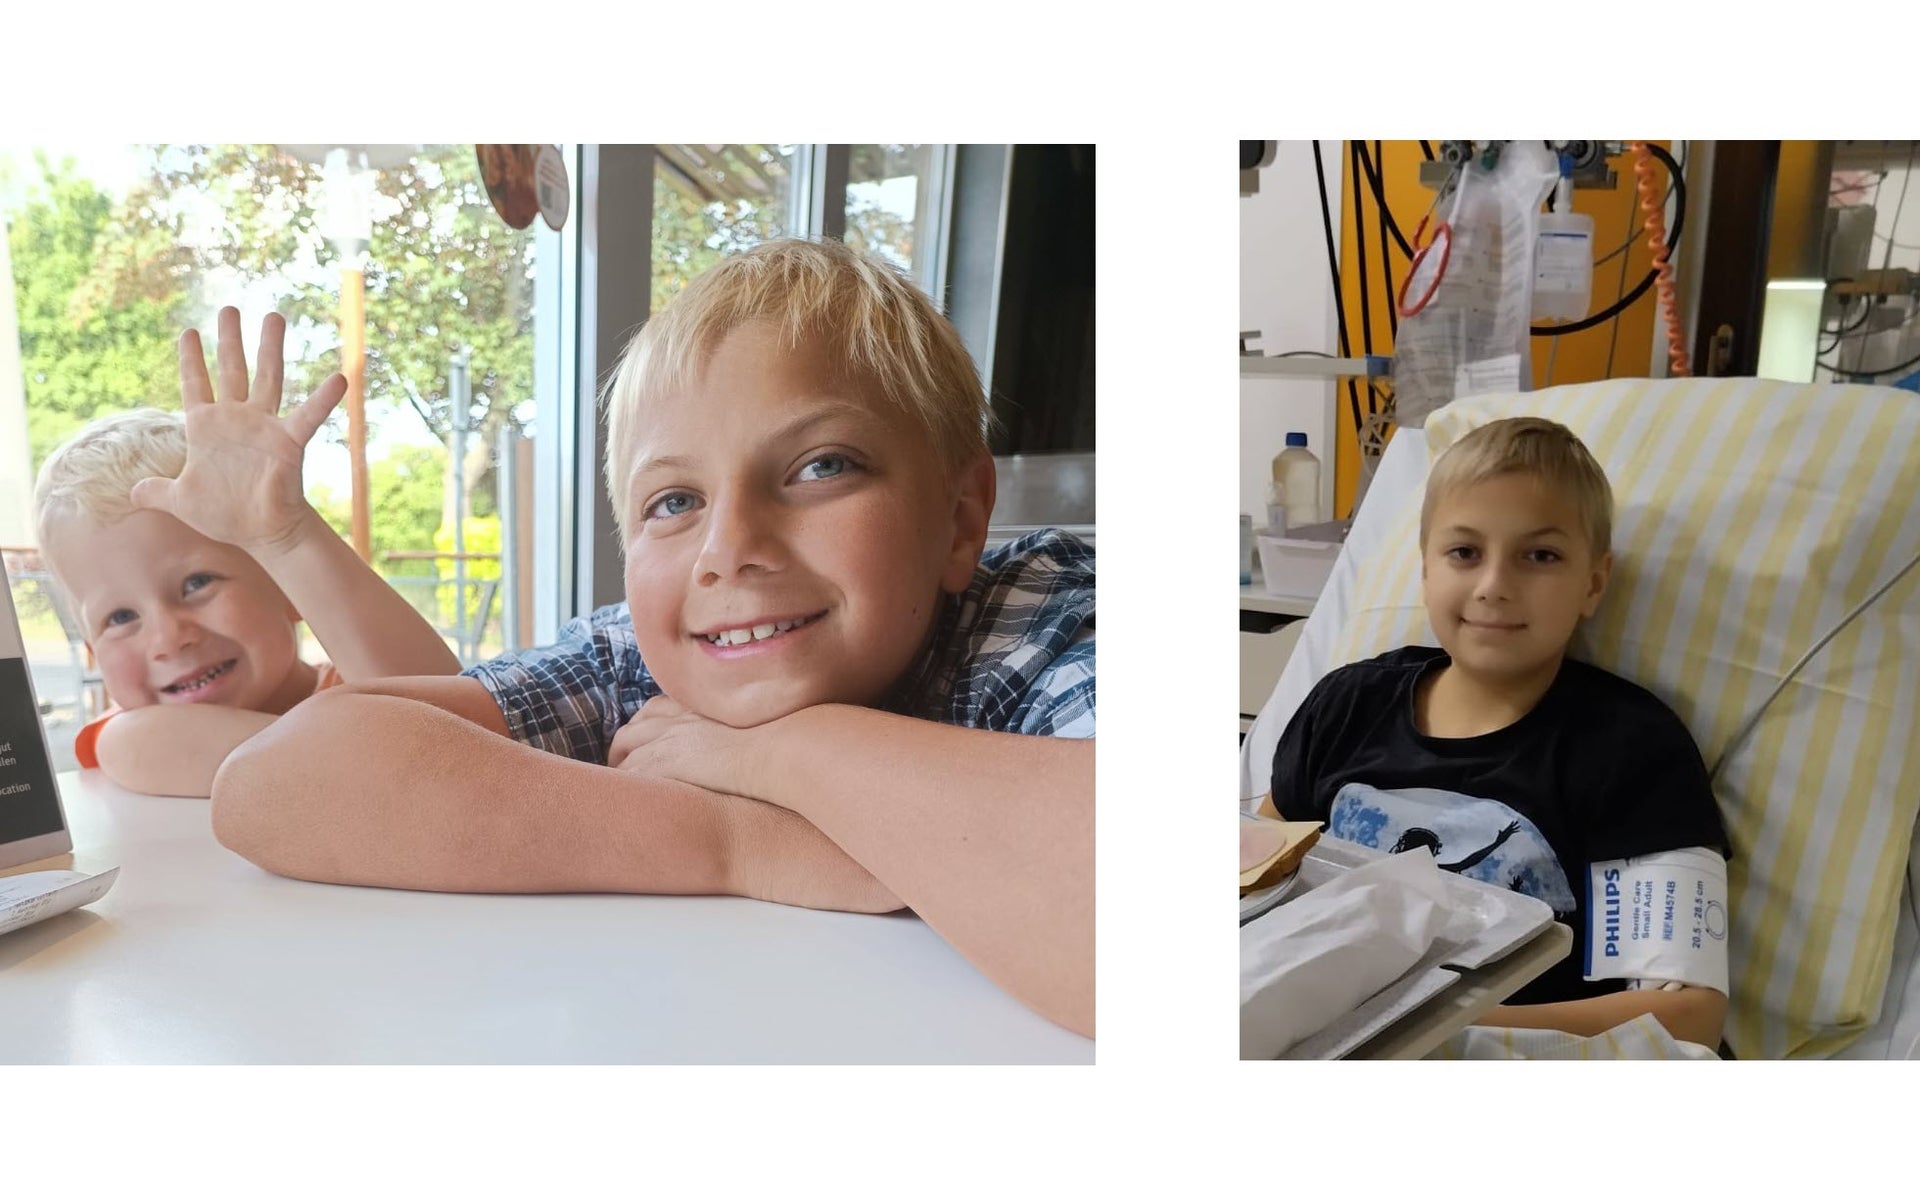 Auf der linken Seite der Collage sind Paul und sein kleiner Bruder zu sehen, wie sie in die Kamera lächeln. Auf der rechten Seite der Collage ist Paul zu sehen, wie er im Krankhausbett liegt und lächelt.